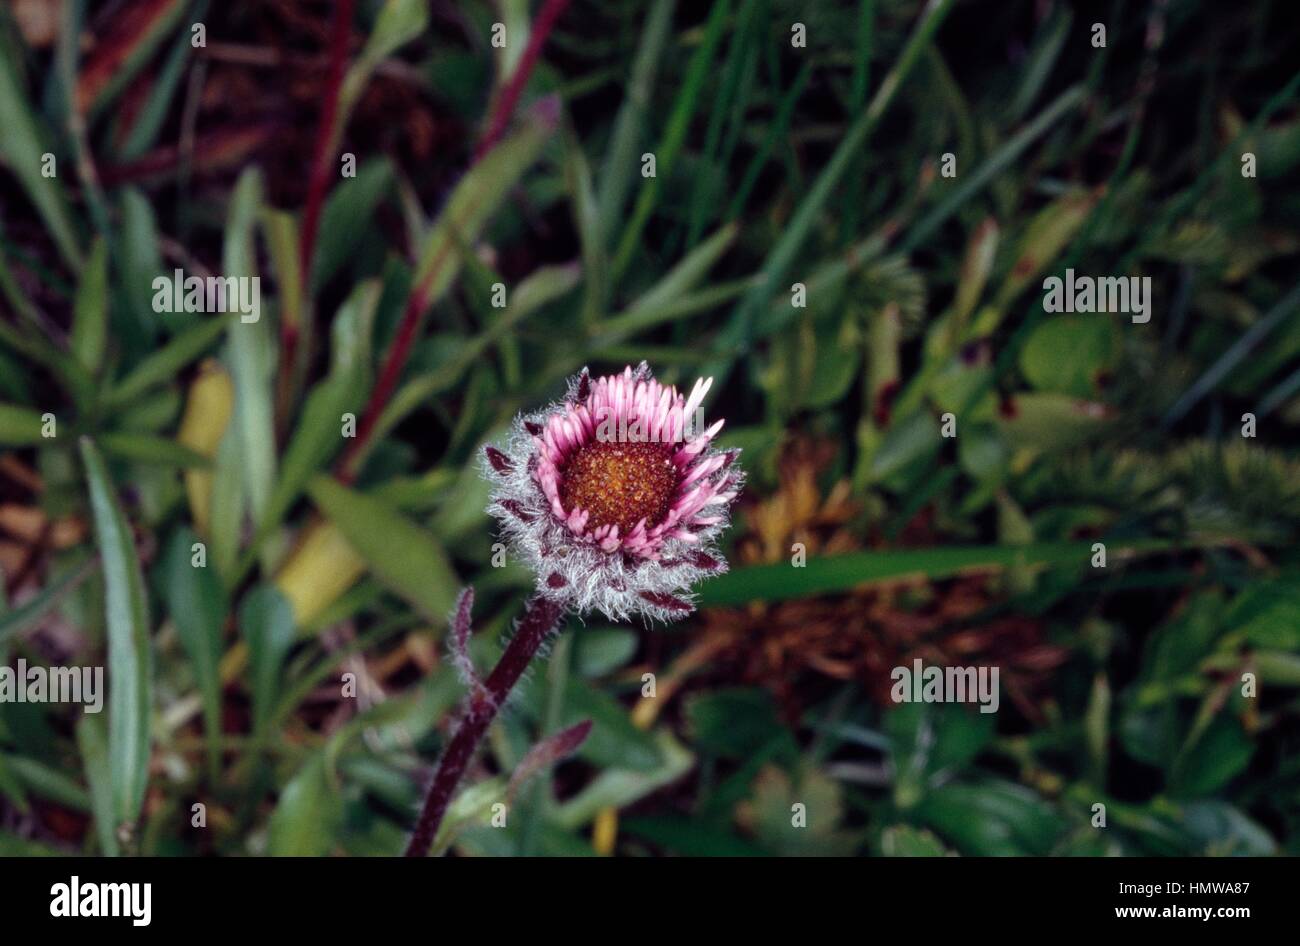 Alpine fleabane (Erigeron alpinum), Asteraceae. Stock Photo